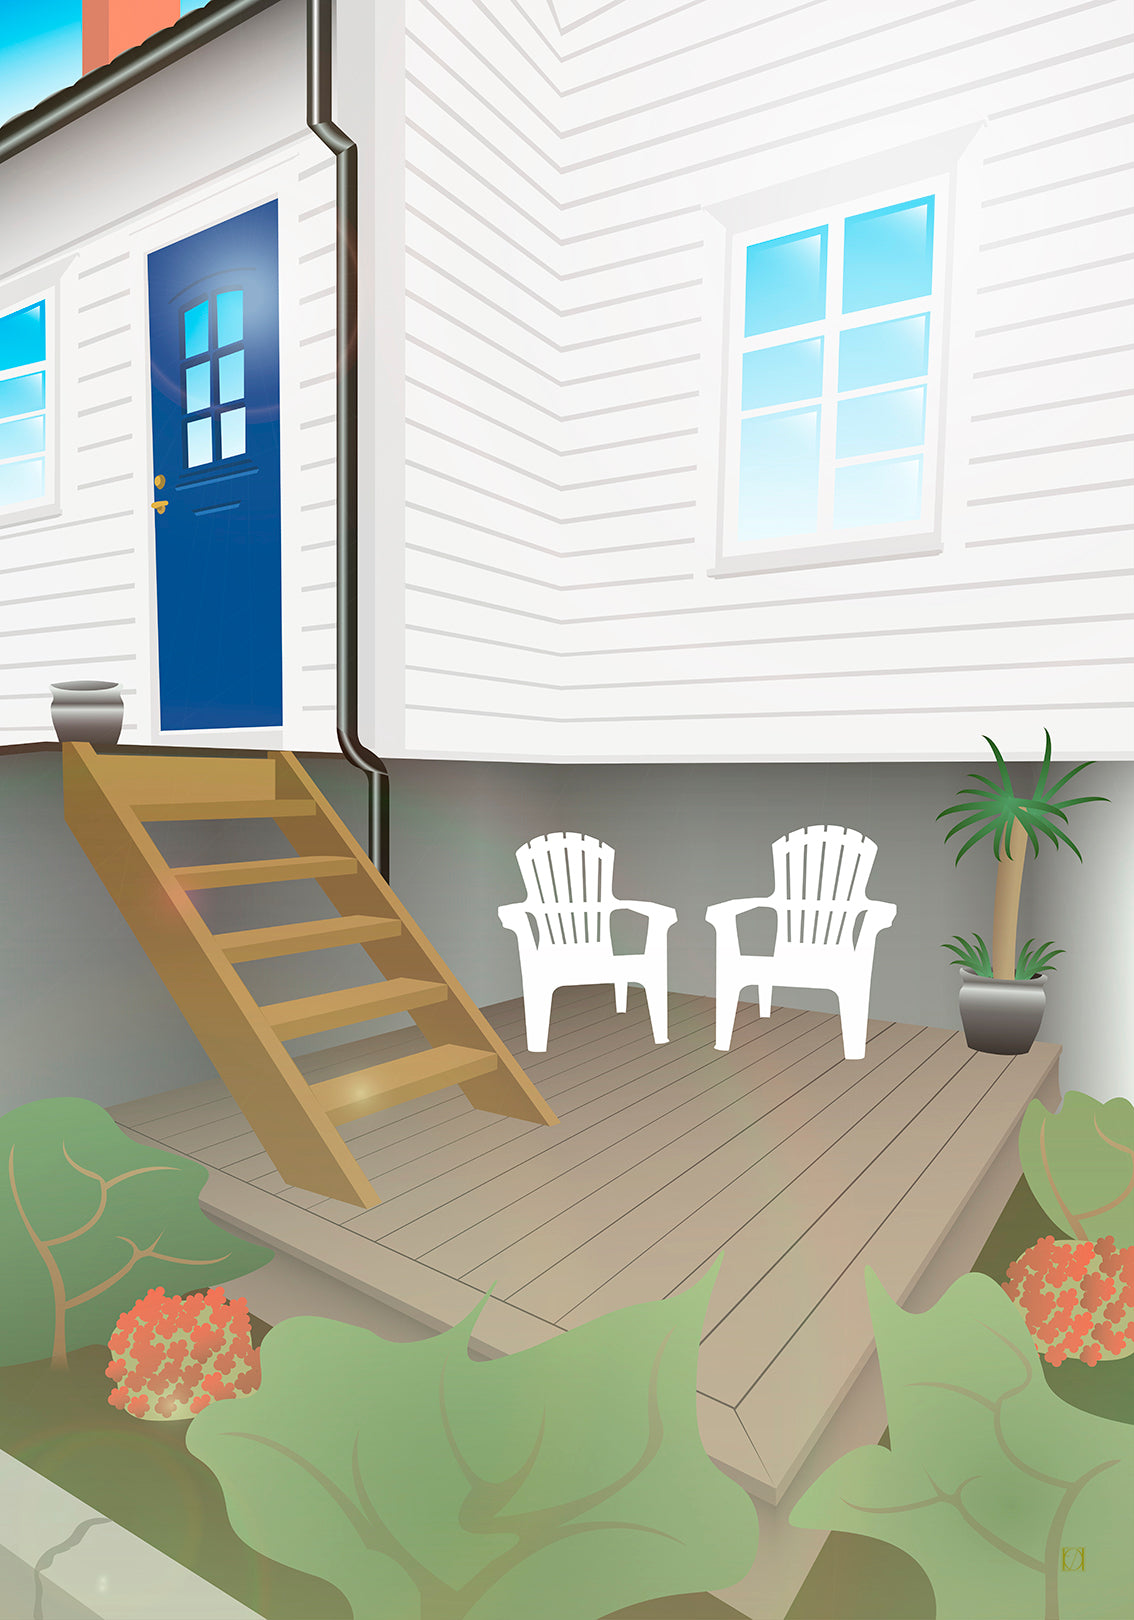 En personlig illustrert plakat av en nydelig liten platting utenfor et skjønt hus. Plakaten har et sommerlig preg og huset ligner nærmest et hus på sørlandet. Huset har blå dør og en blå himmel spegles i vinduene. På plattingen står to monobloc-stoler.